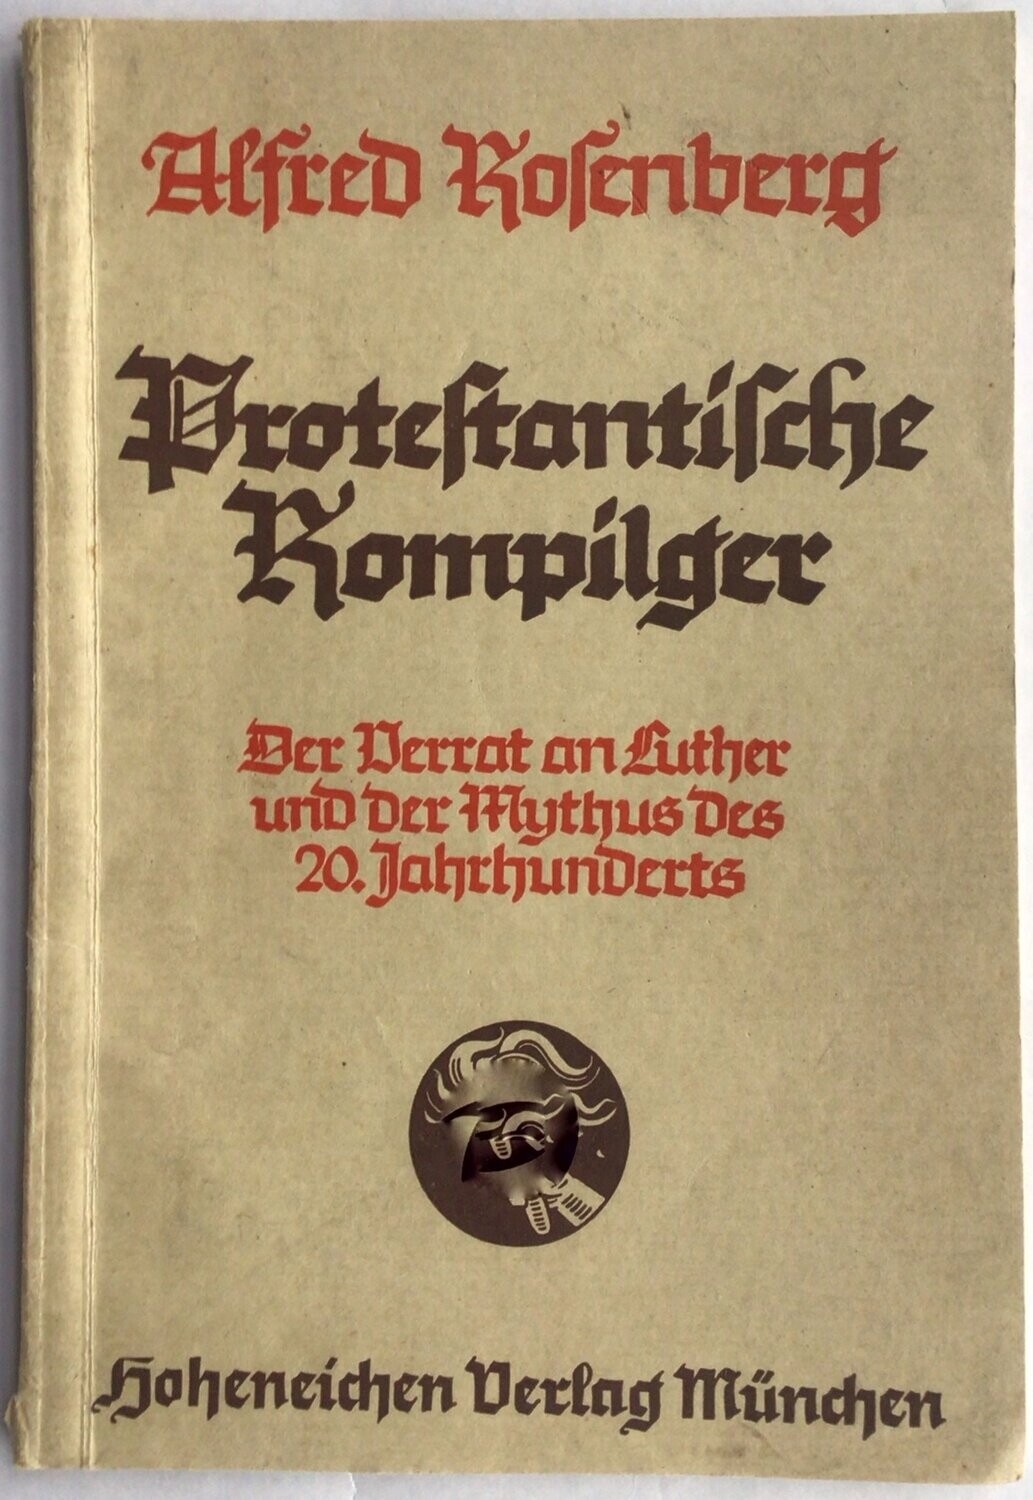 Protestantische Rompilger - Broschierte Ausgabe (6. Auflage) aus dem Jahr 1937